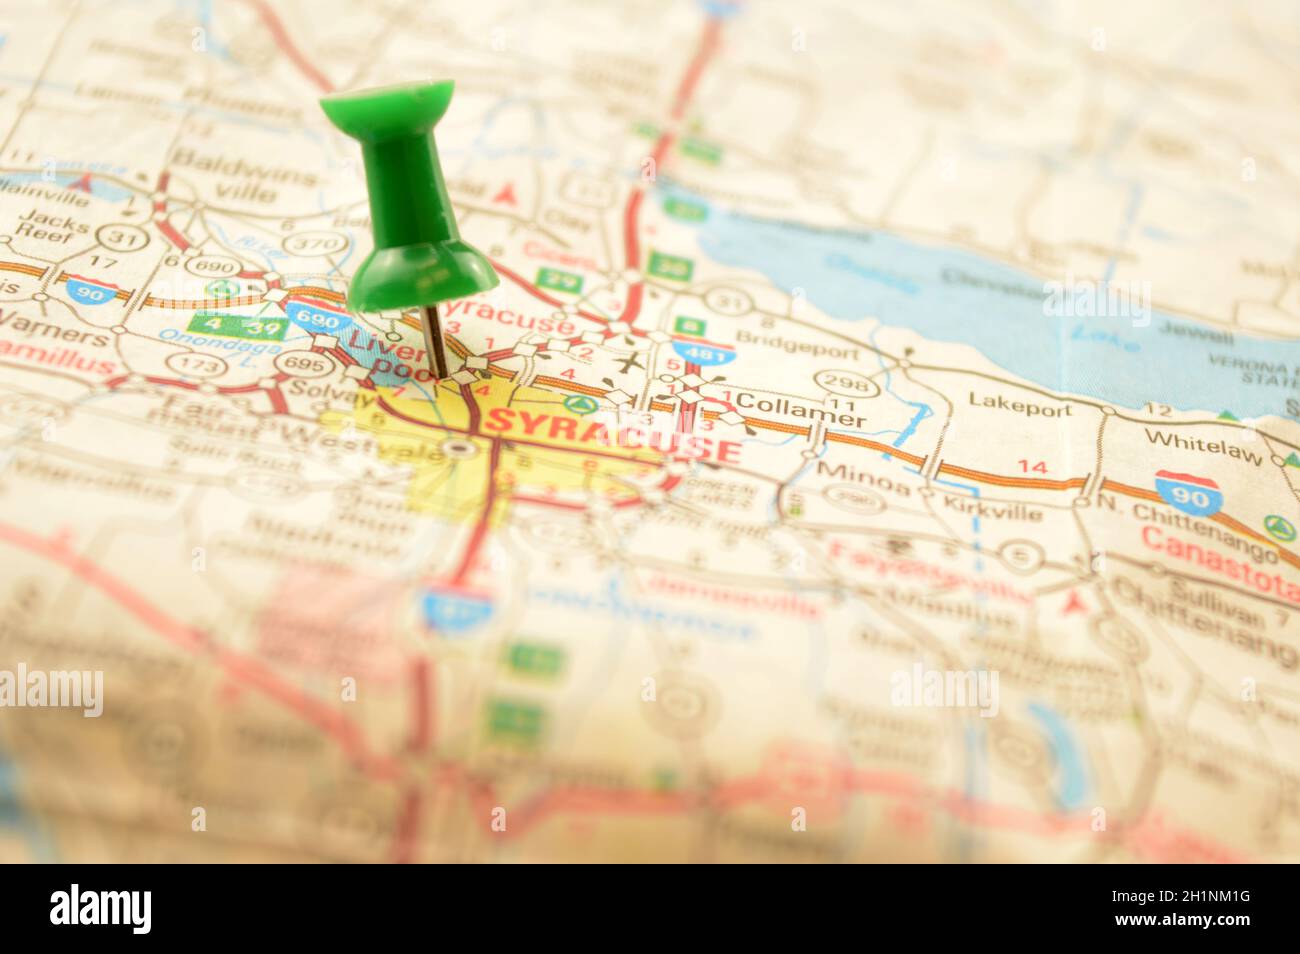 Une épingle verte enfoncée dans une carte détaillant le point d'intérêt se référant à la place nommée Syracuse, New York, des États-Unis d'Amérique. Banque D'Images